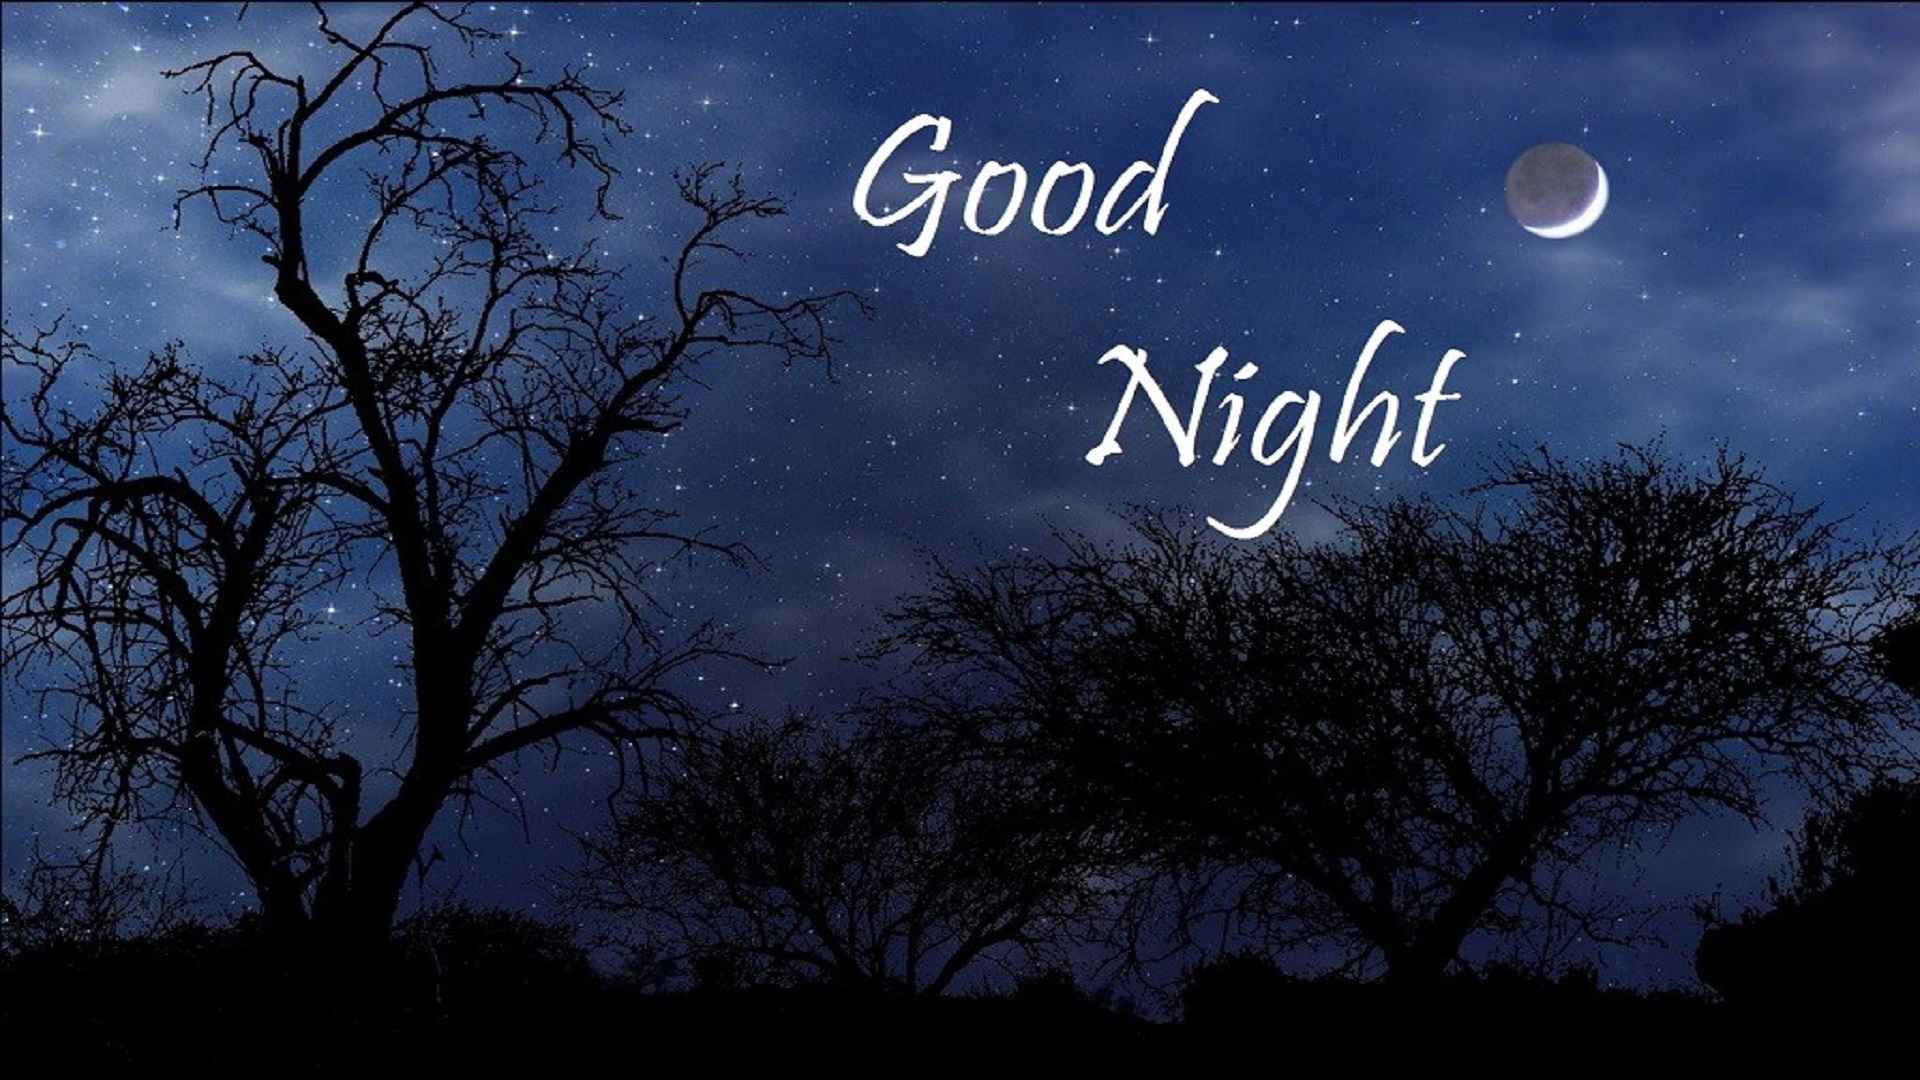 good night wallpaper,sky,moonlight,text,night,branch